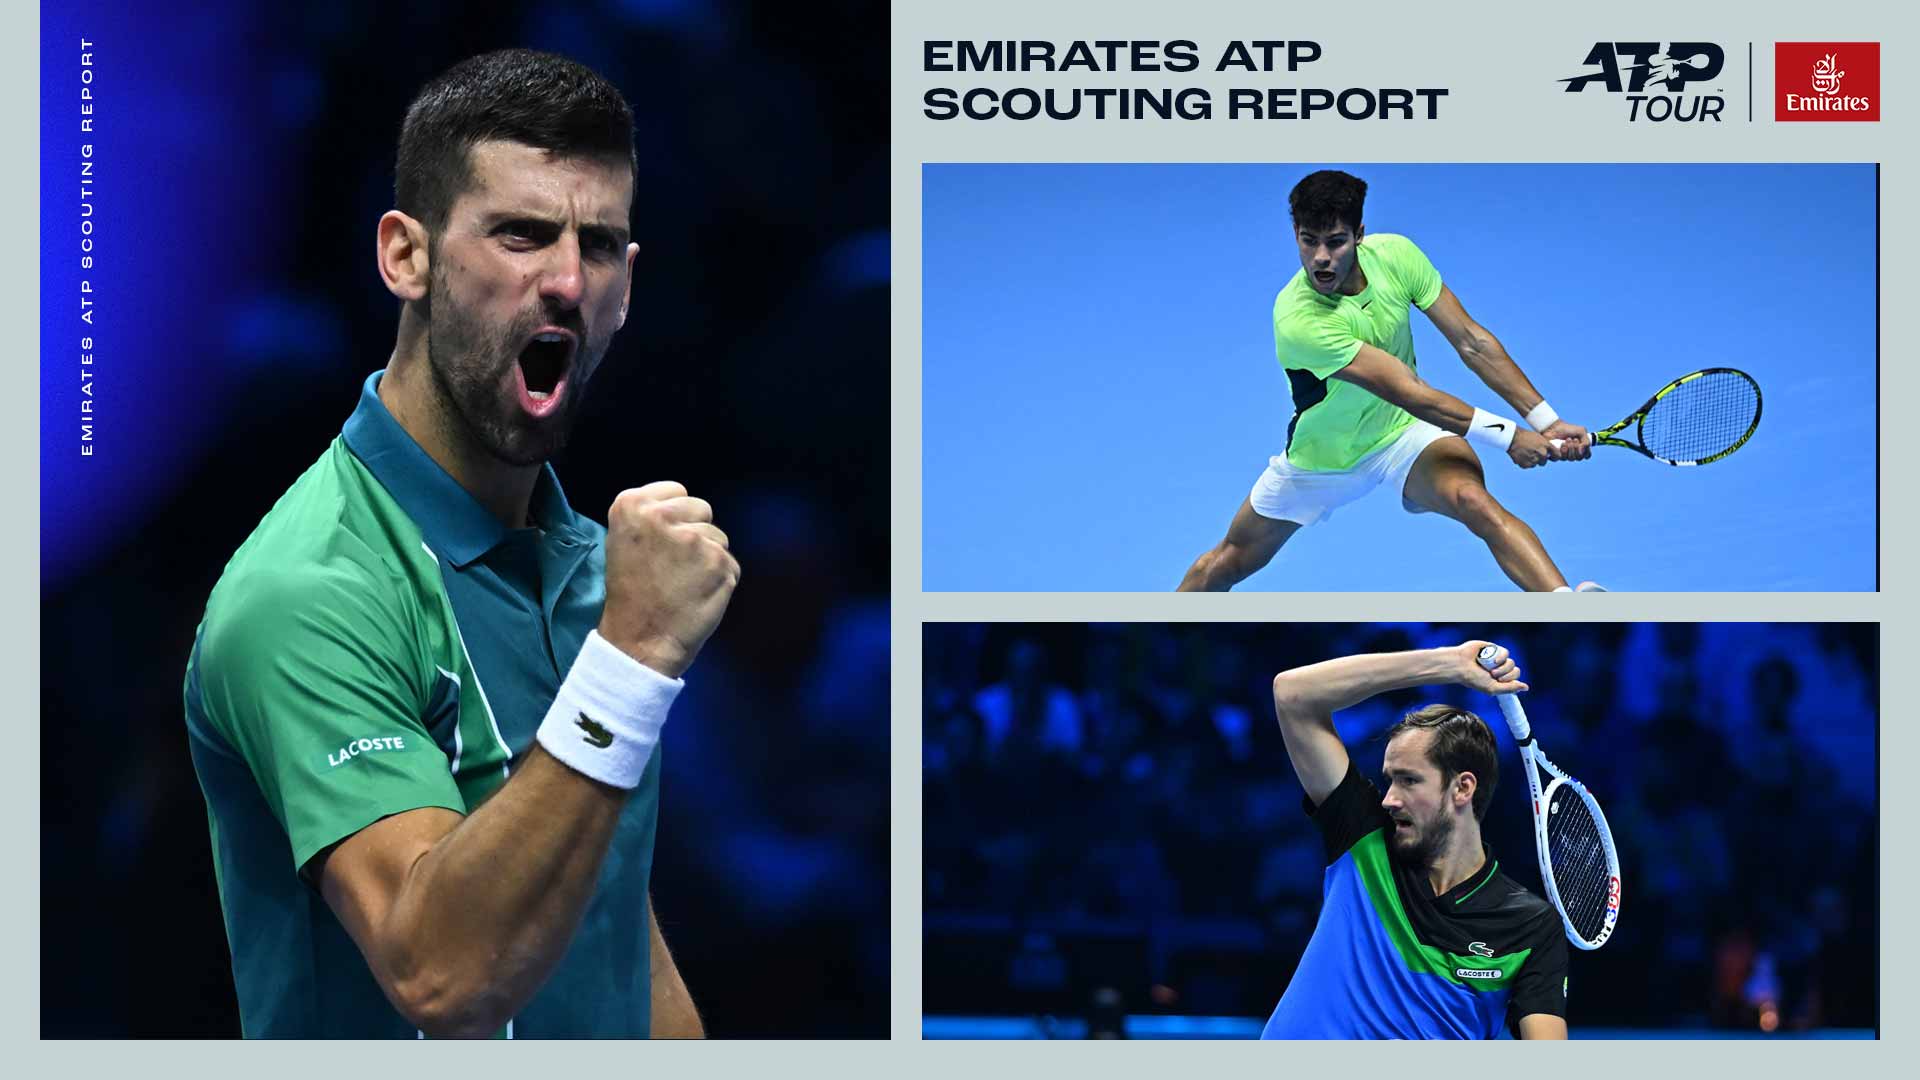 Rapporto dello scouting: Djokovic cerca il suo 11esimo titolo agli Australian Open.  Alcaraz e Medvedev si contendono il numero 1 |  Giro dell'ATP